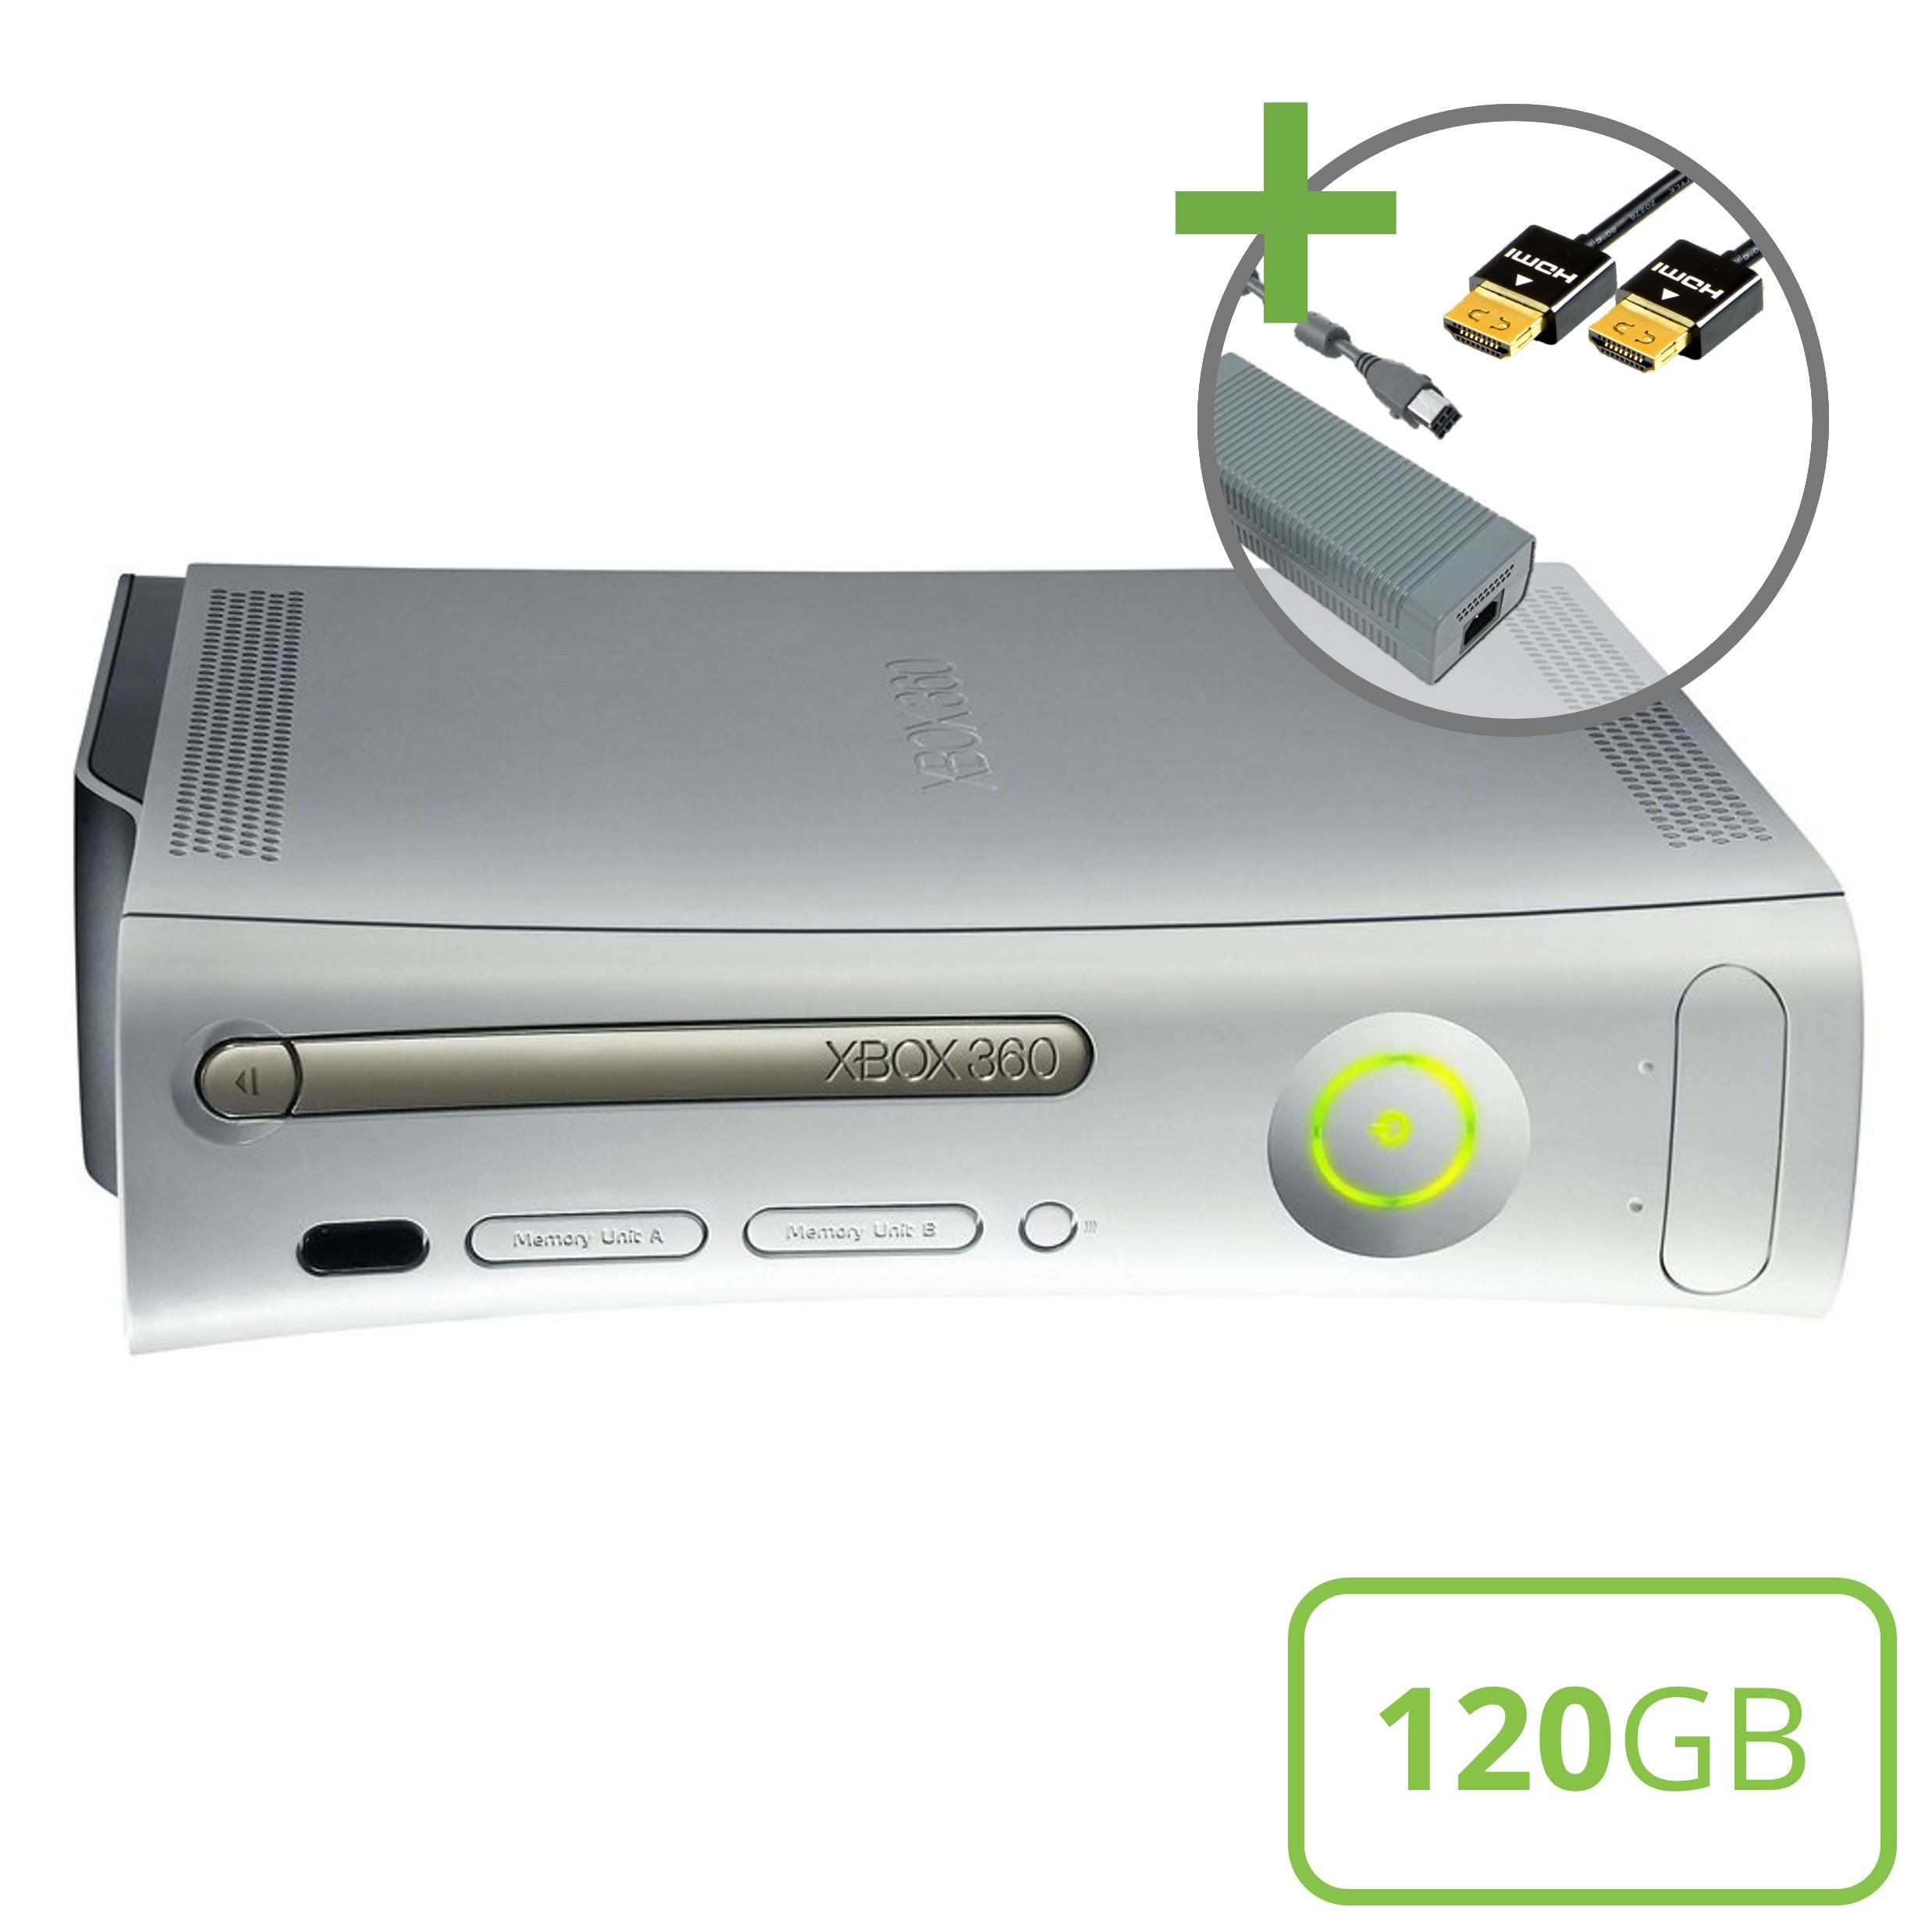 Microsoft Xbox 360 Premium Console (HDMI) - 120GB - Xbox 360 Hardware - 2